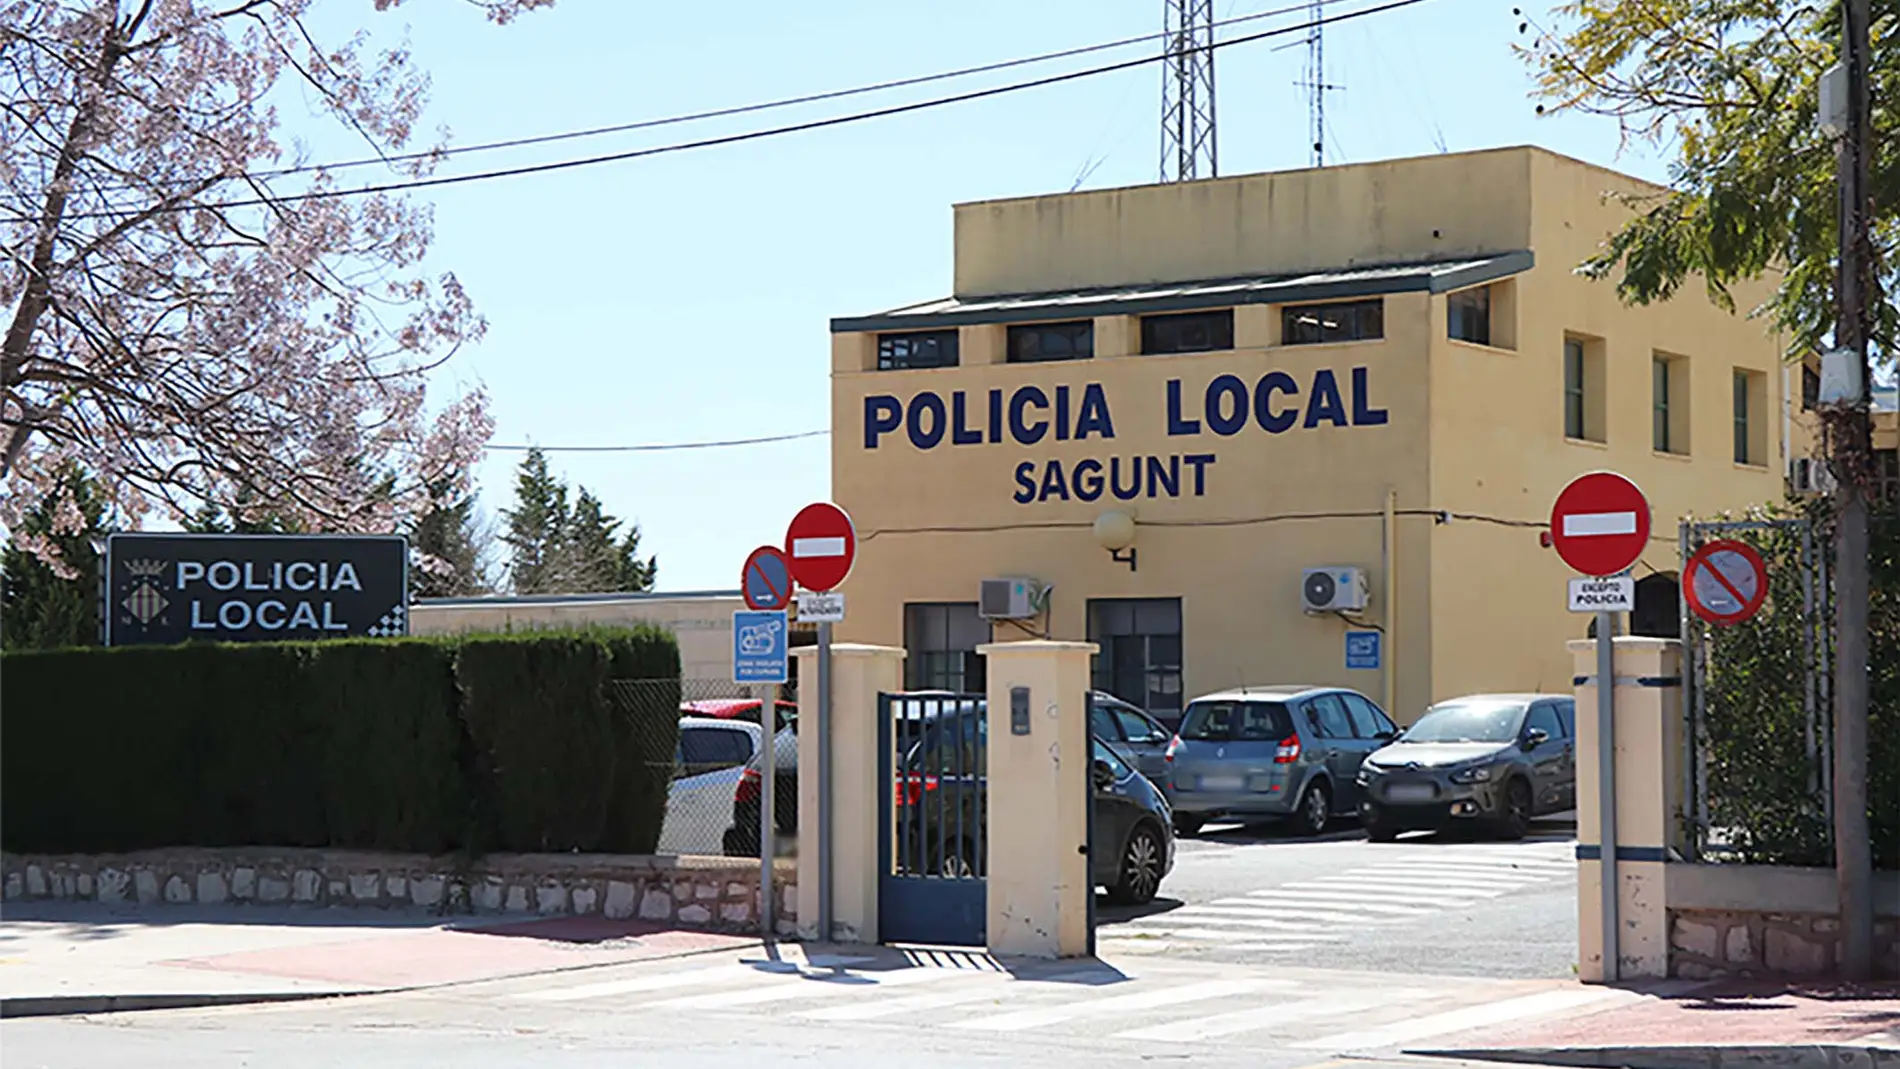 Imagen de las dependencias de la Policía Local de Sagunto